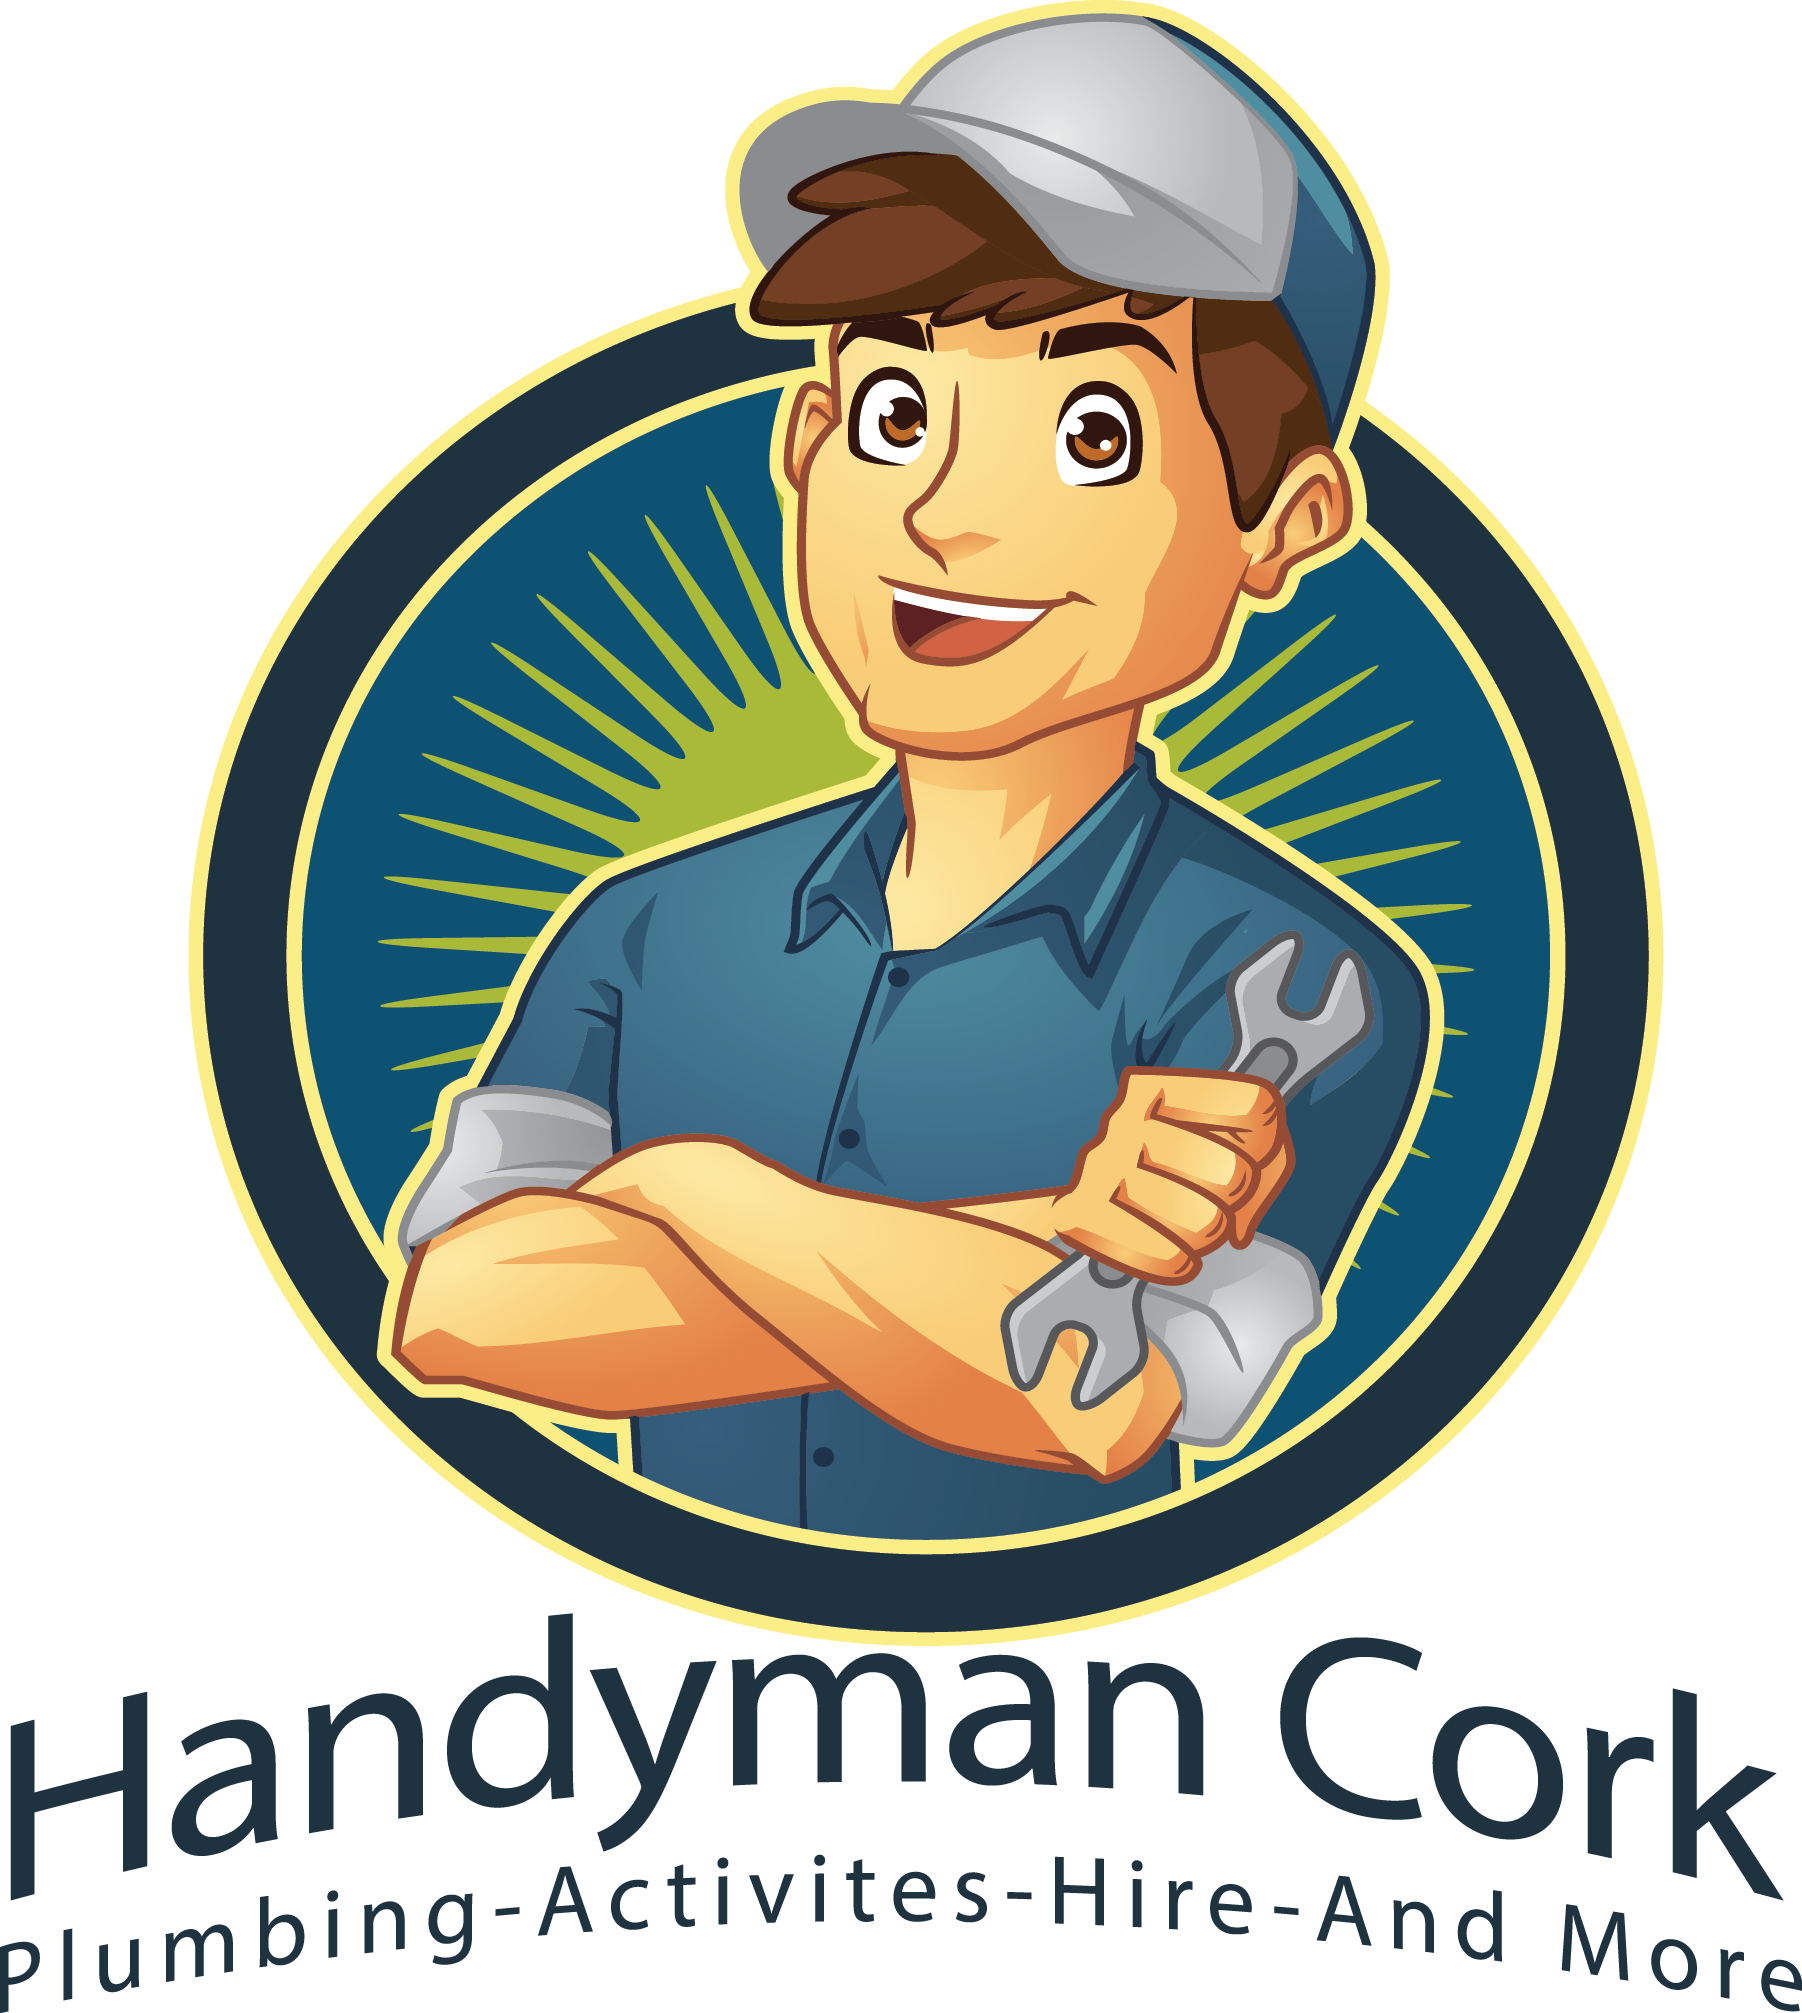 Handyman Cork Logo